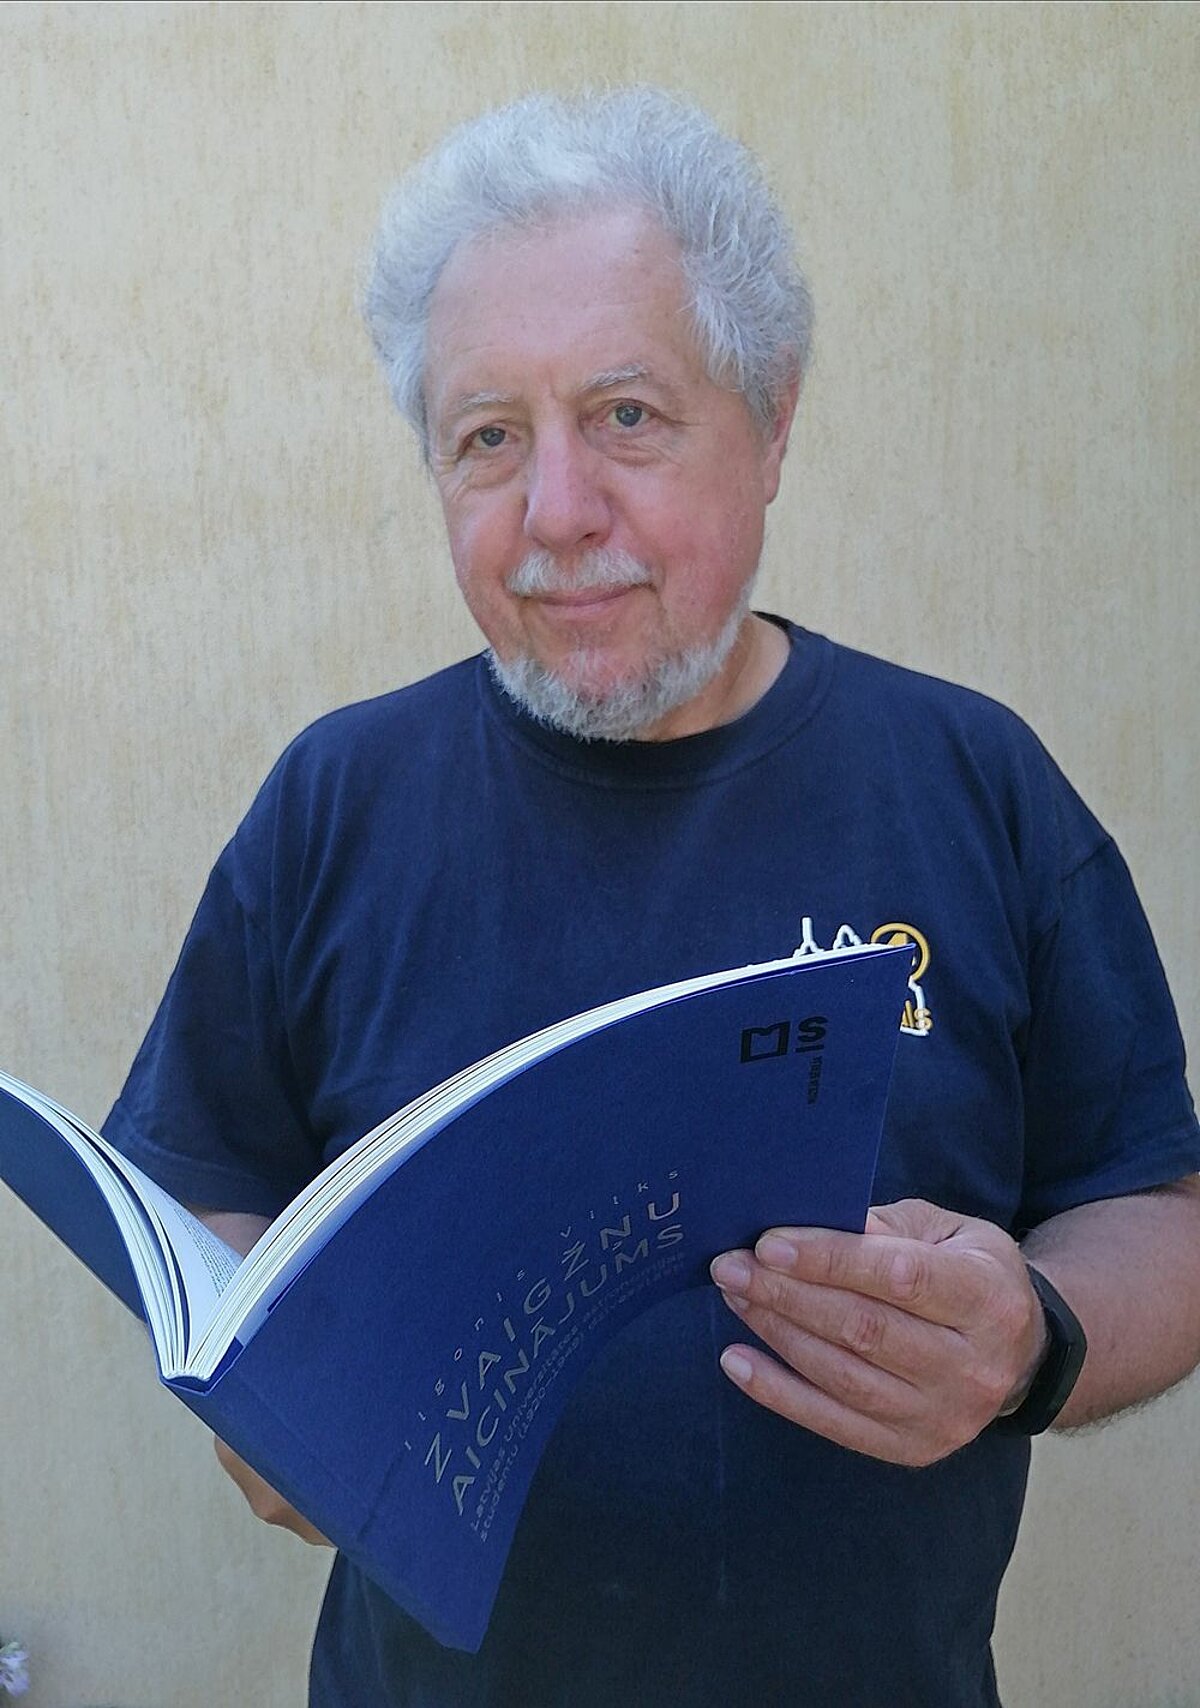 Autors ar nupat no tipogrāfijas saņemto grāmatu. G. Vilkas foto